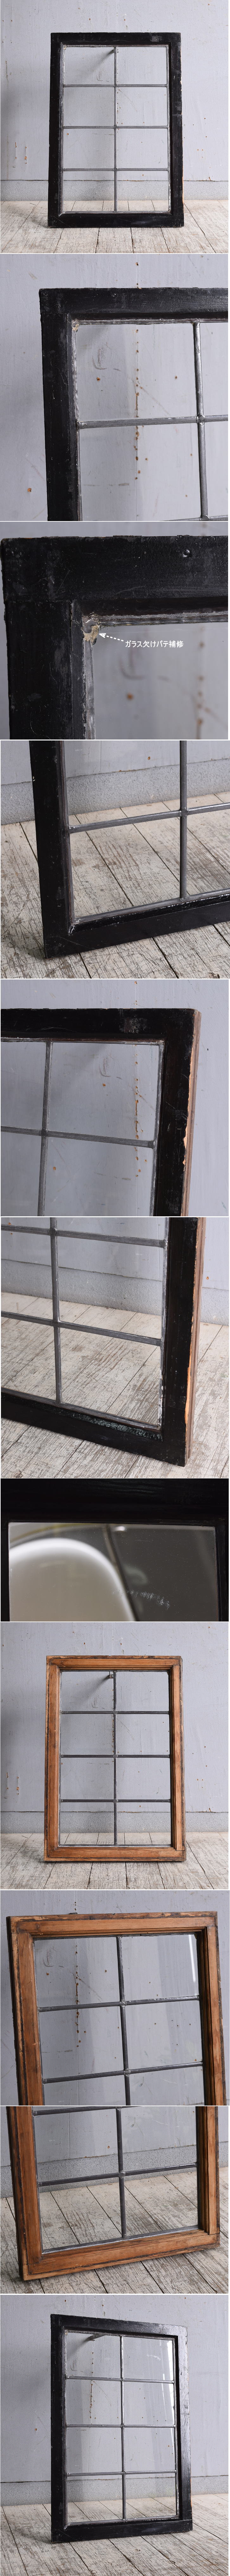 イギリス アンティーク 窓 無色透明 10107